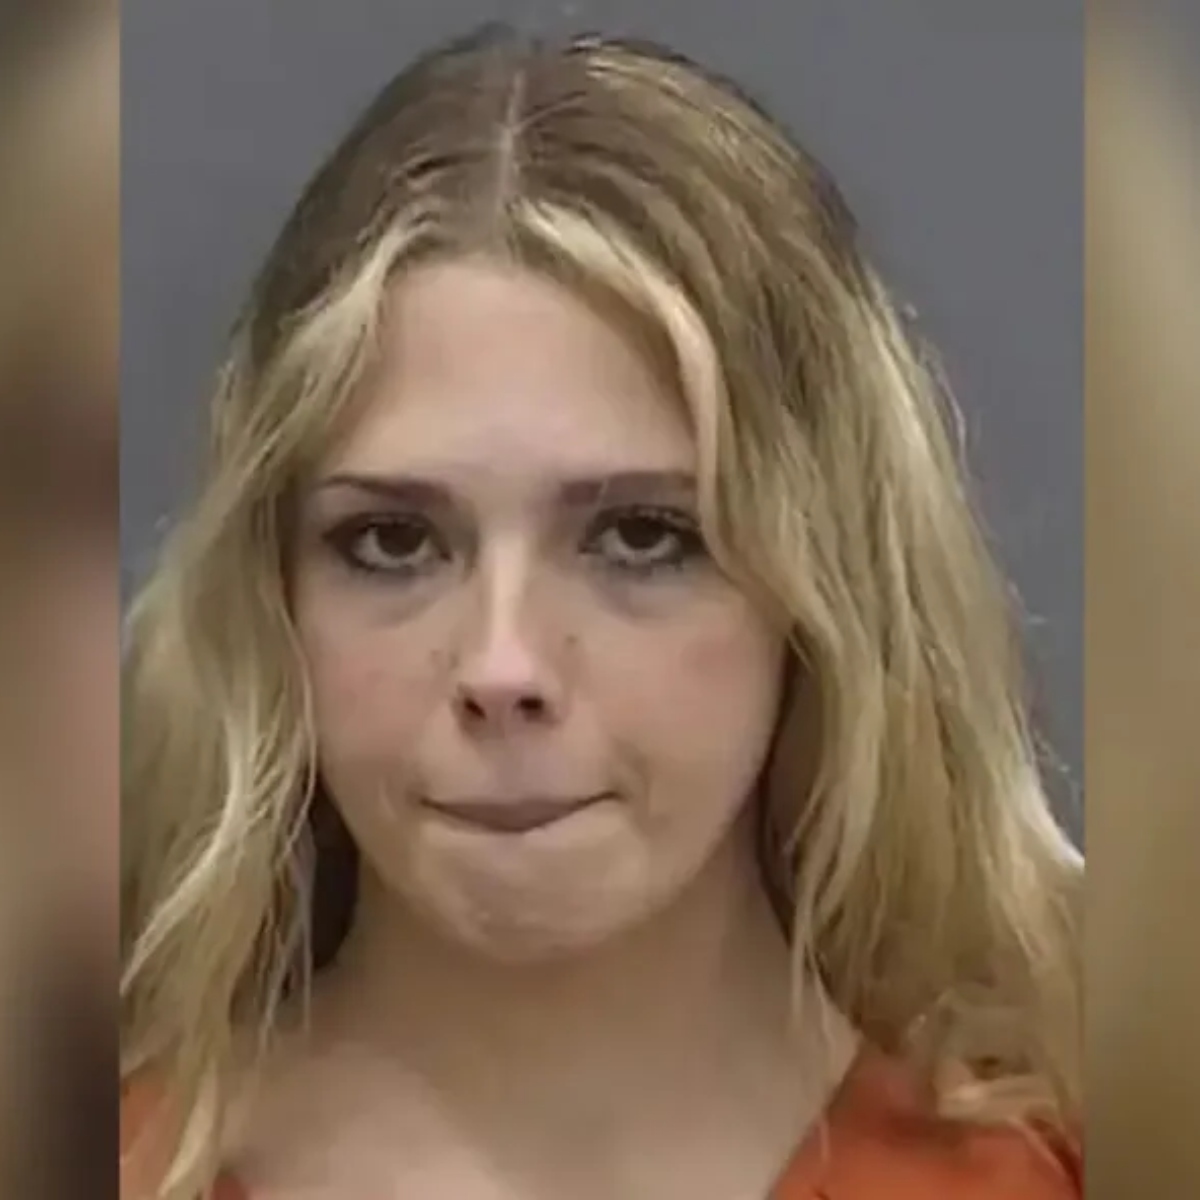  Mulher é detida por fingir ter 14 anos para fazer sexo com alunos do ensino médio 